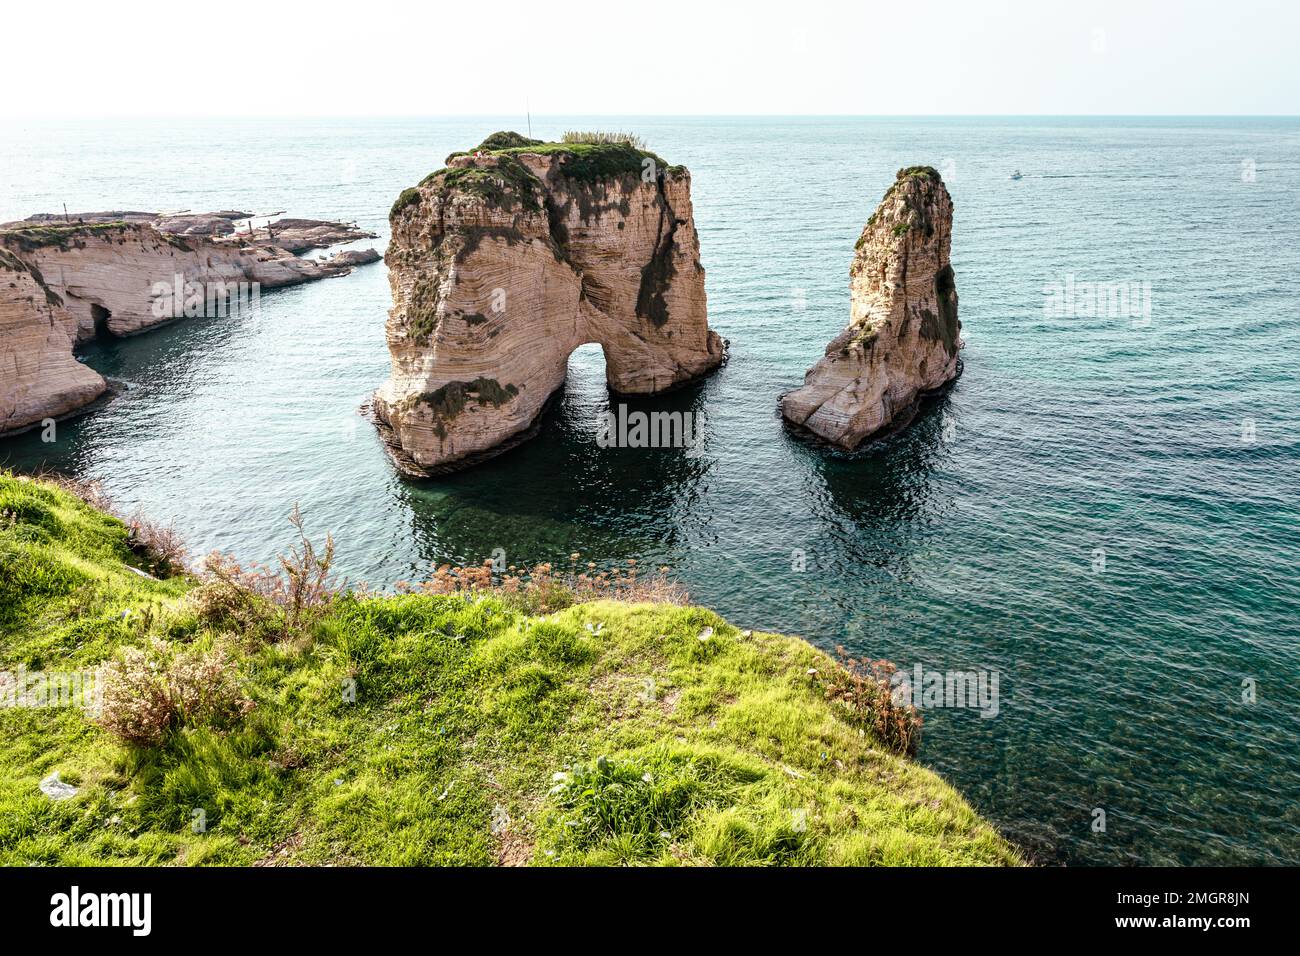 Raouche Rocks à Beyrouth, Liban dans la mer pendant la journée. Pigeon Rocks en mer Méditerranée. Destination touristique populaire à Beyrouth. Banque D'Images